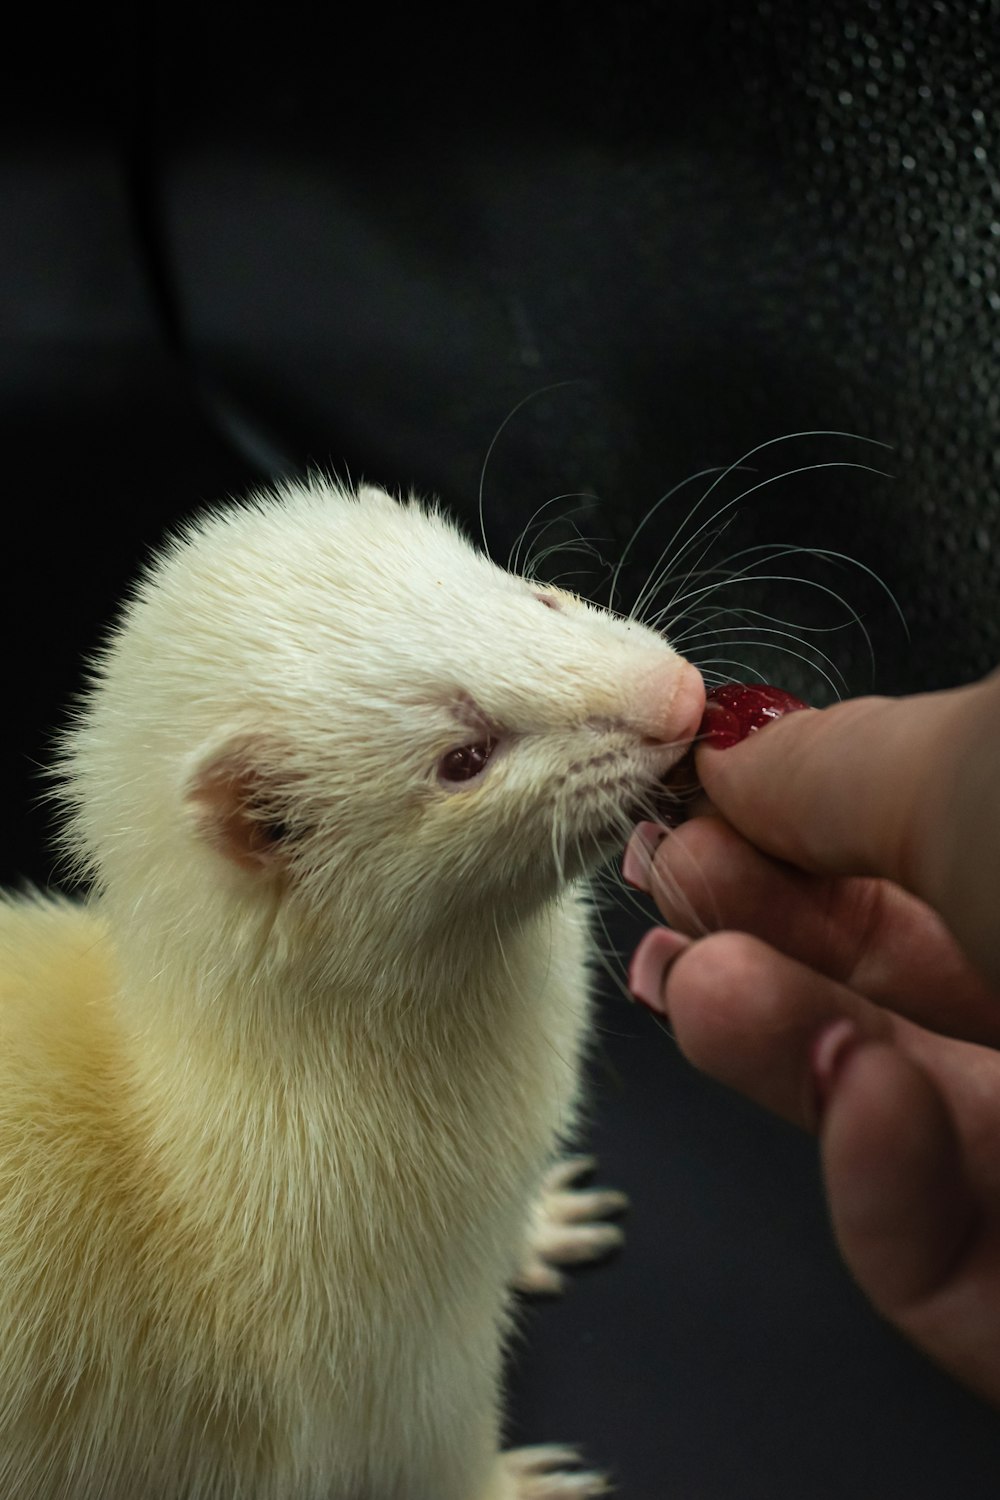 a person feeding a ferret a piece of fruit